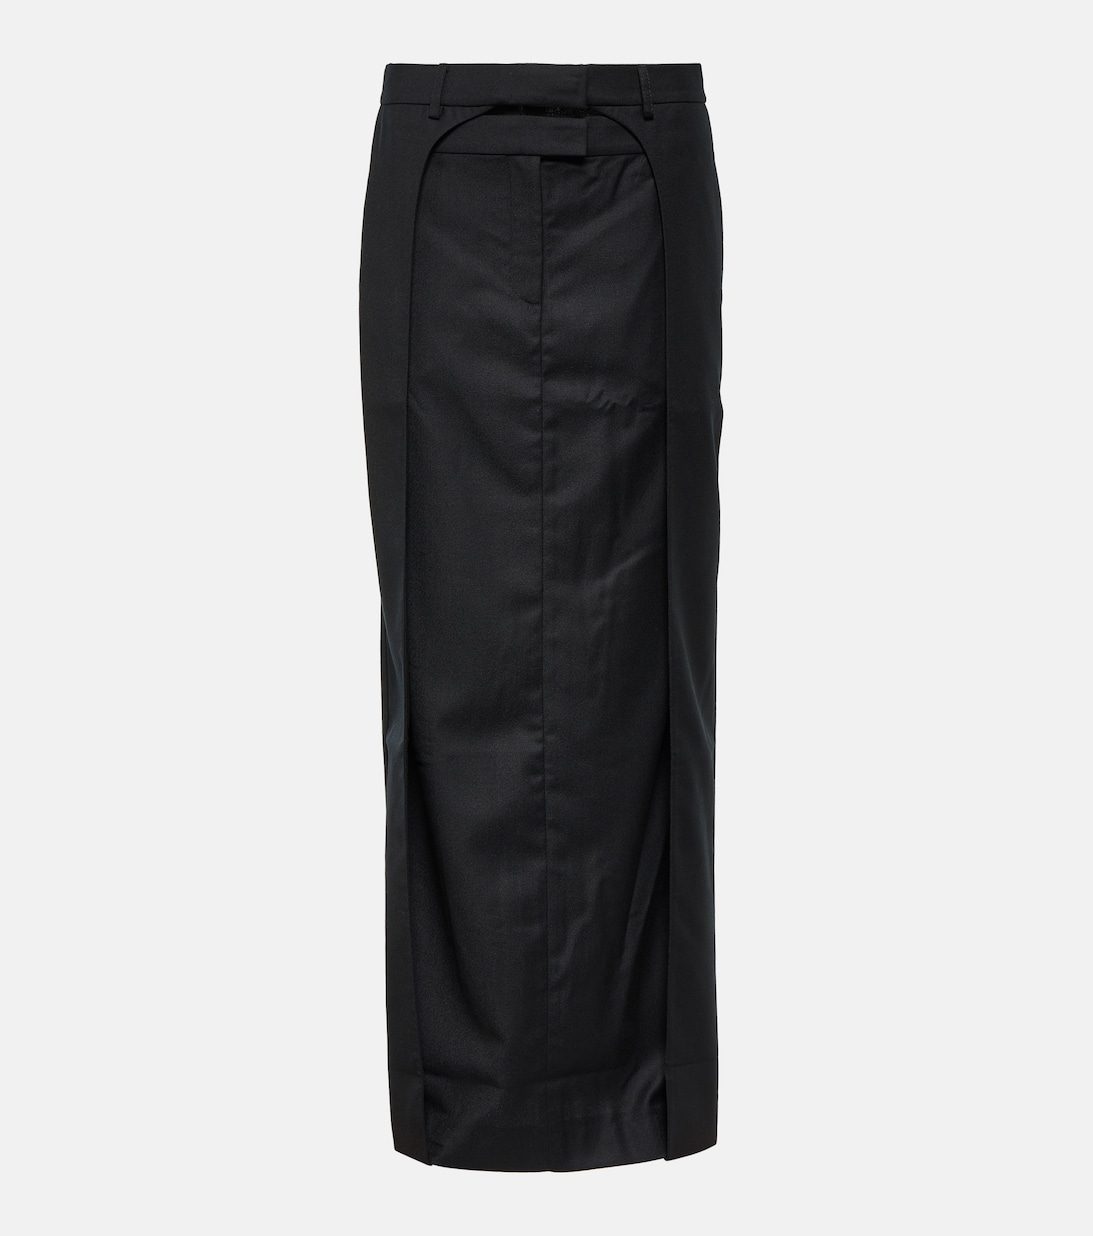 Плиссированная юбка макси Fera из шерсти AYA MUSE, черный плиссированная юбка макси fera из шерсти aya muse черный